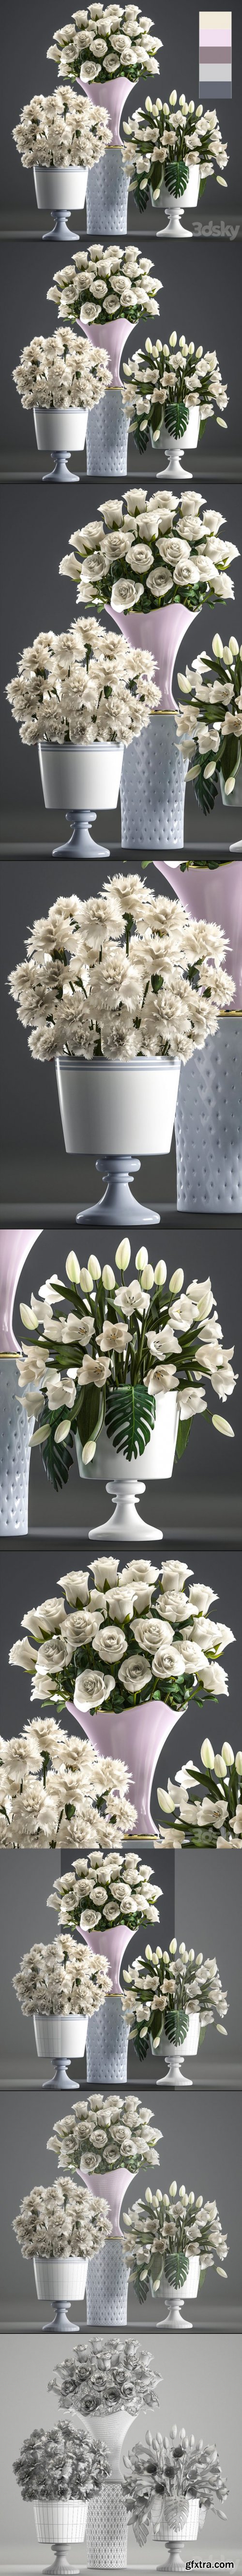 Set of White Flowers 58 White Bouquets Pot Flowerpot White Tulips White Roses Carnation Vase